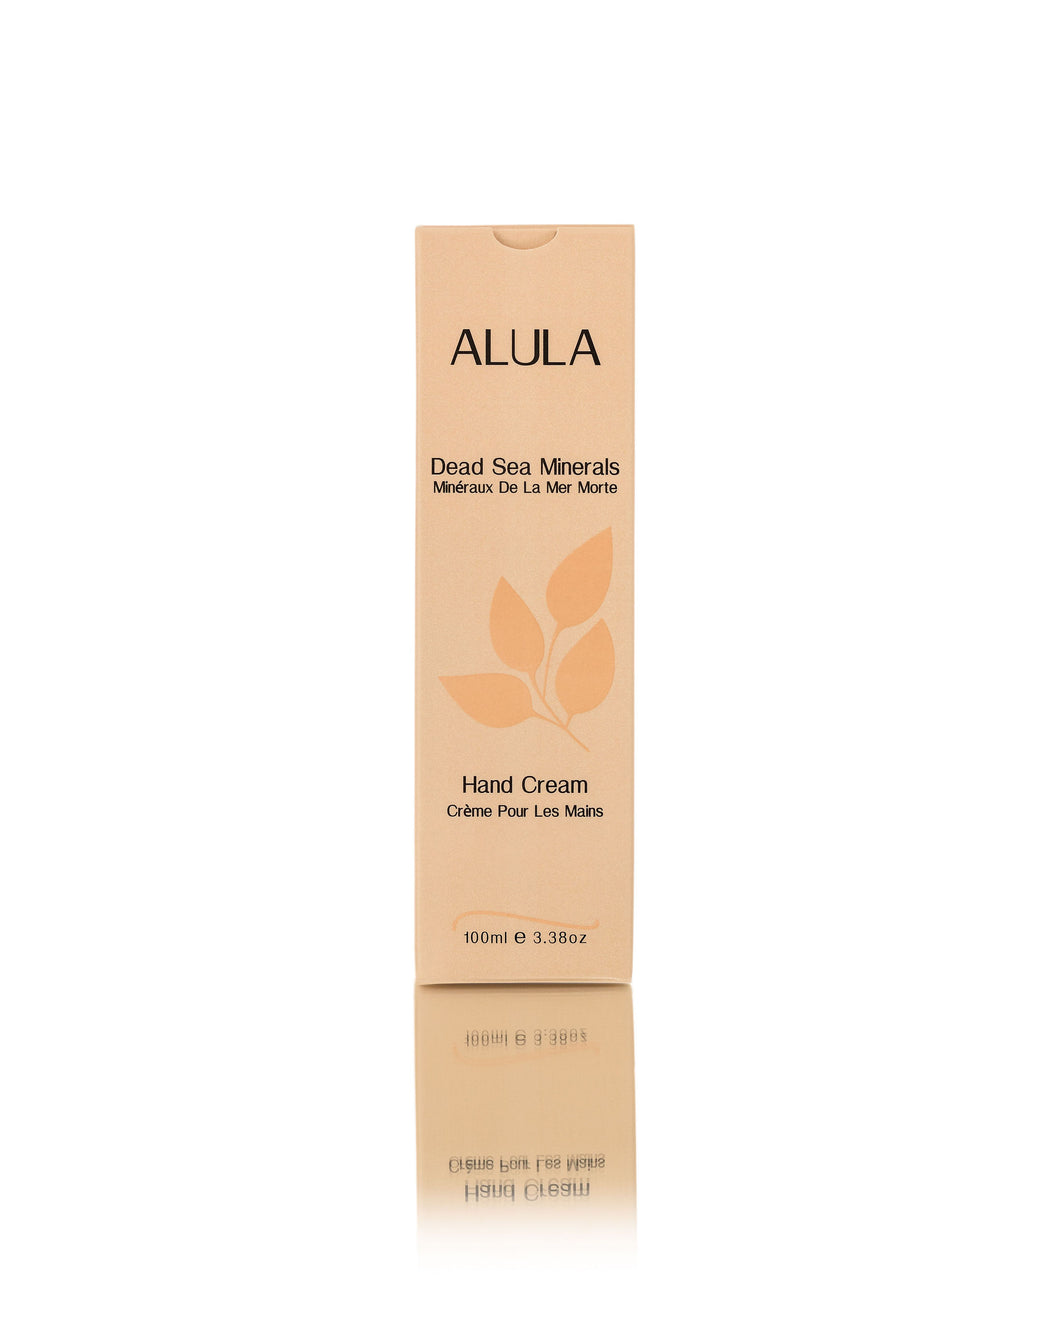 ALULA Hand Cream with Dead Sea Minerals